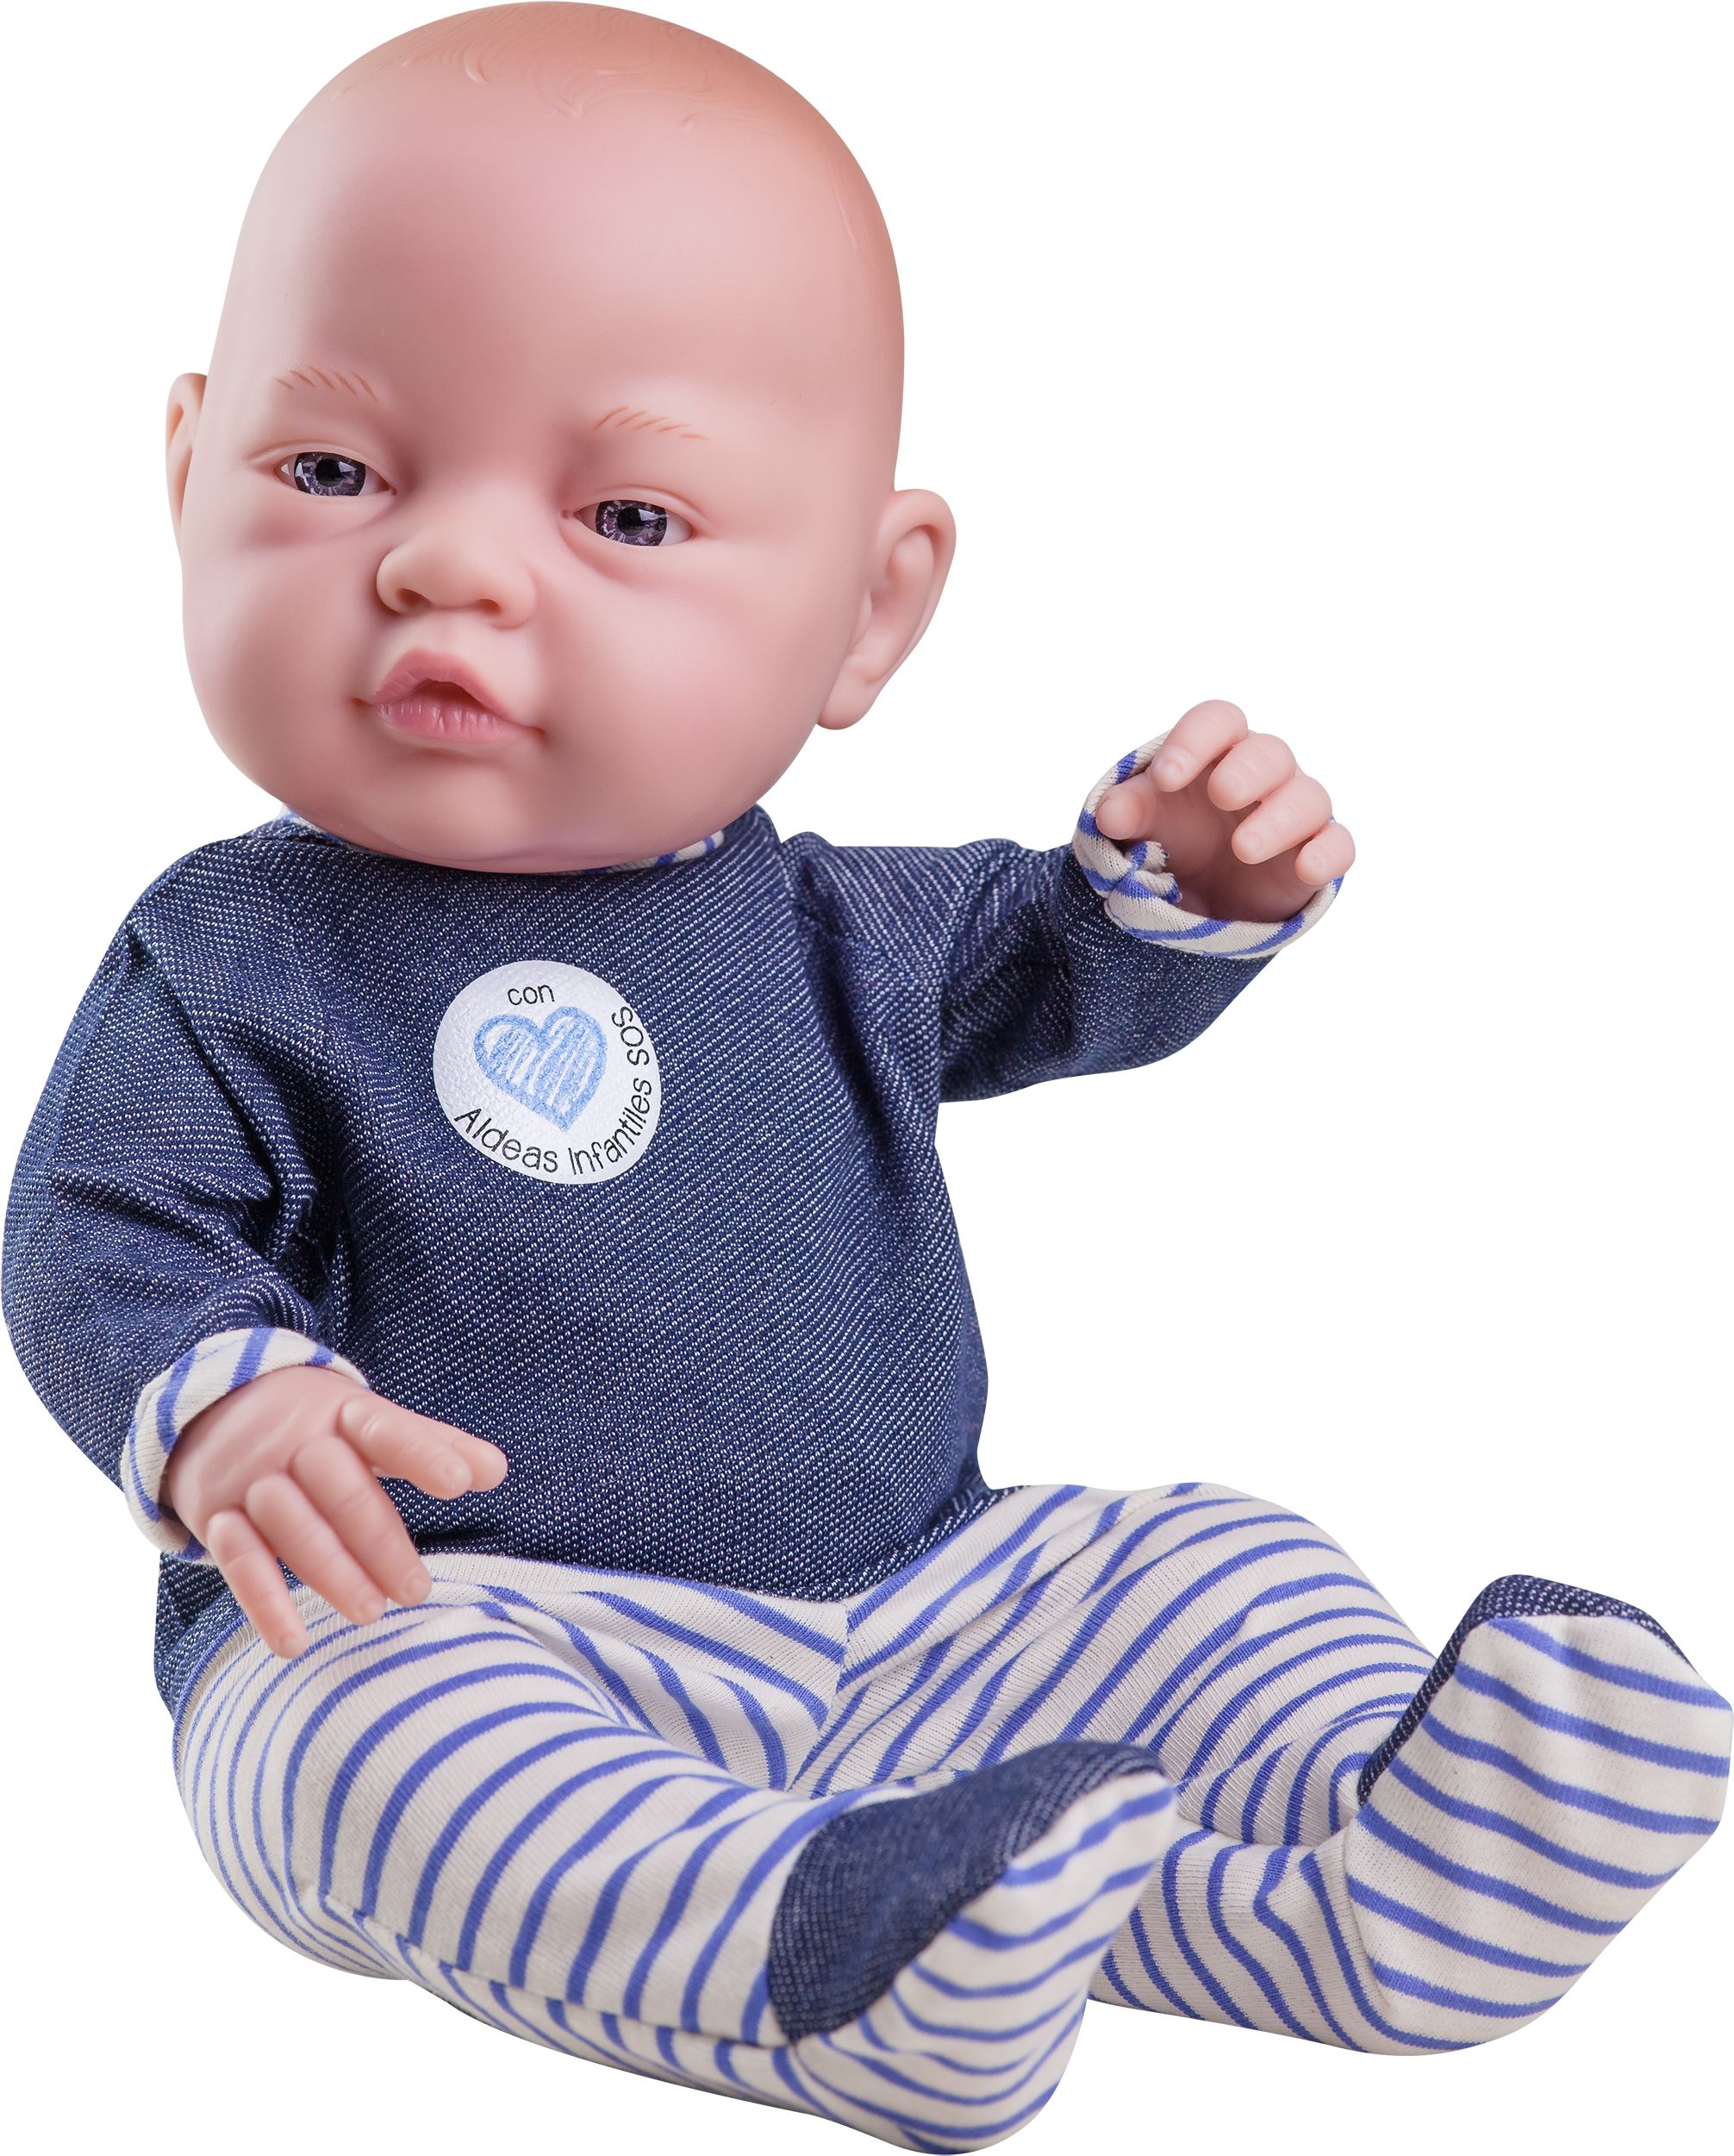 Realistické miminko - holčička -Vlastina od firmy Paola Reina ze Španělska - obrázek 1